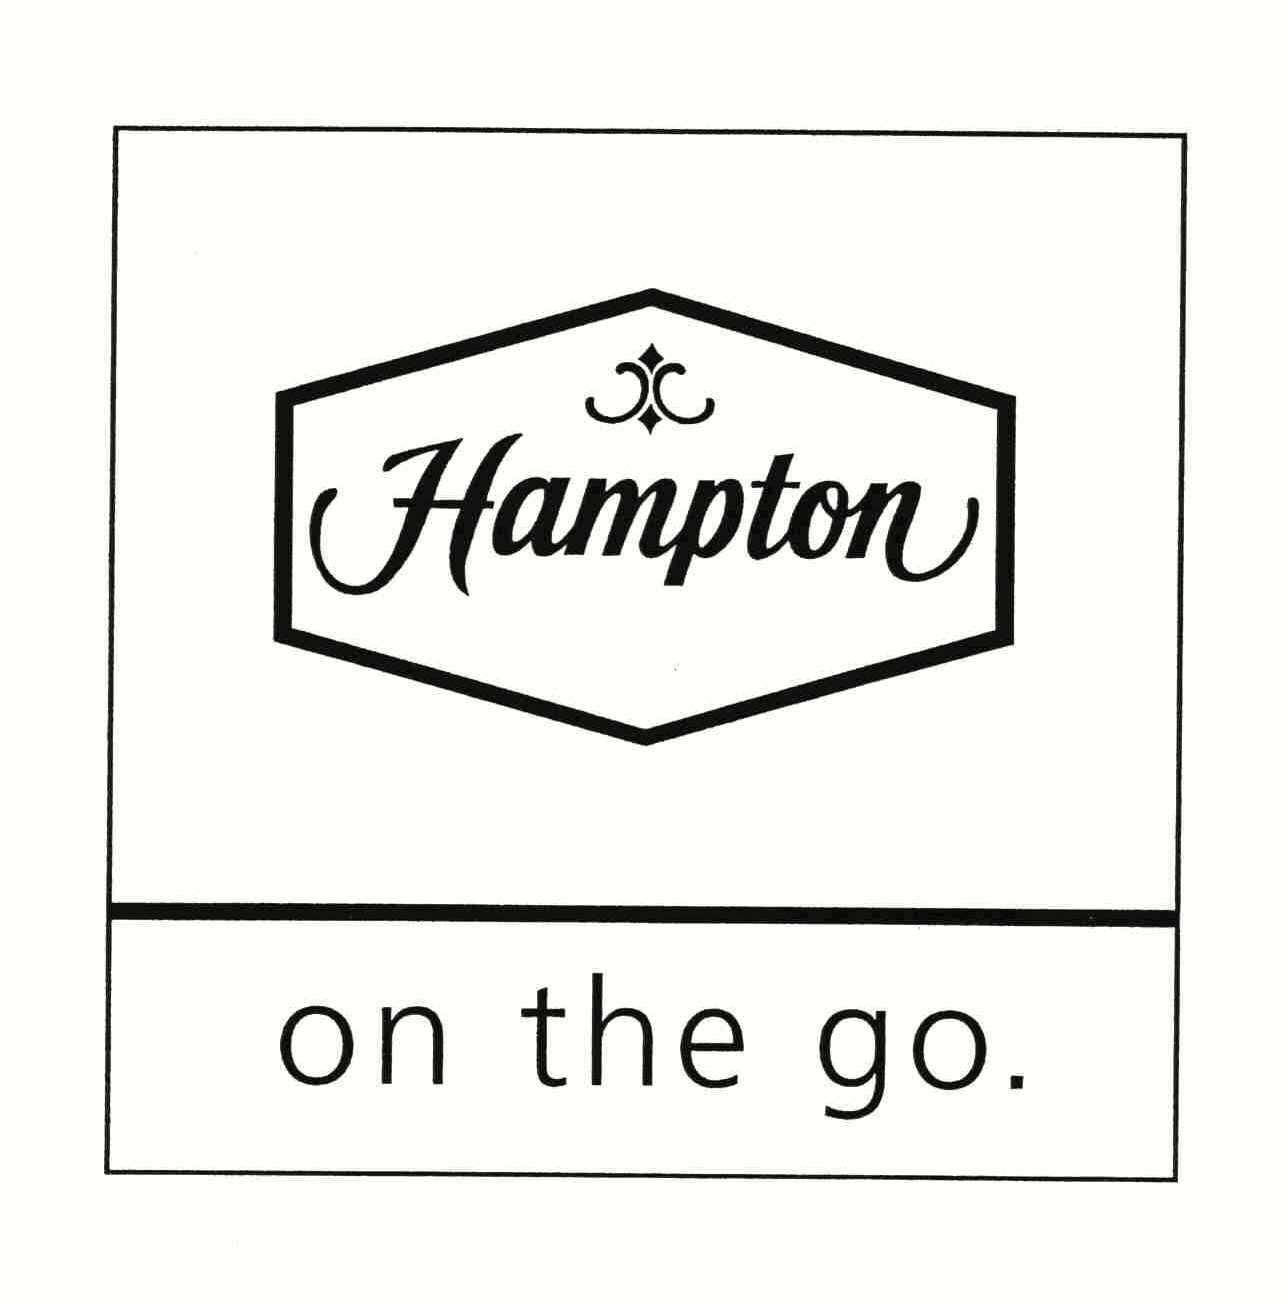  HAMPTON ON THE GO.